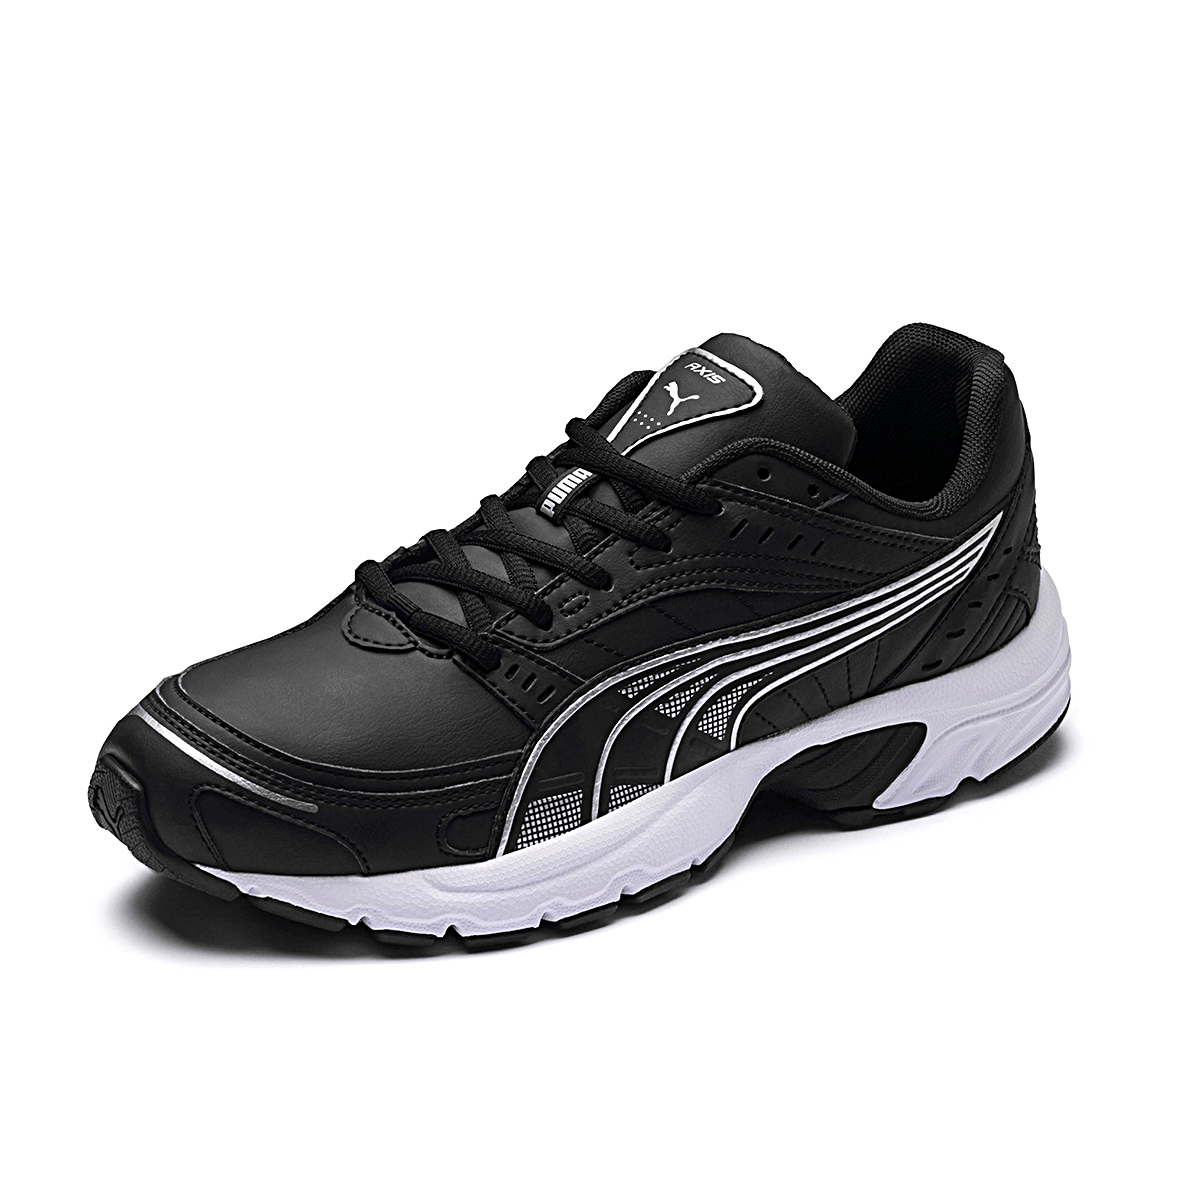 Puma Axis SL Herren Sneaker Schuhe schwarz 368466 02